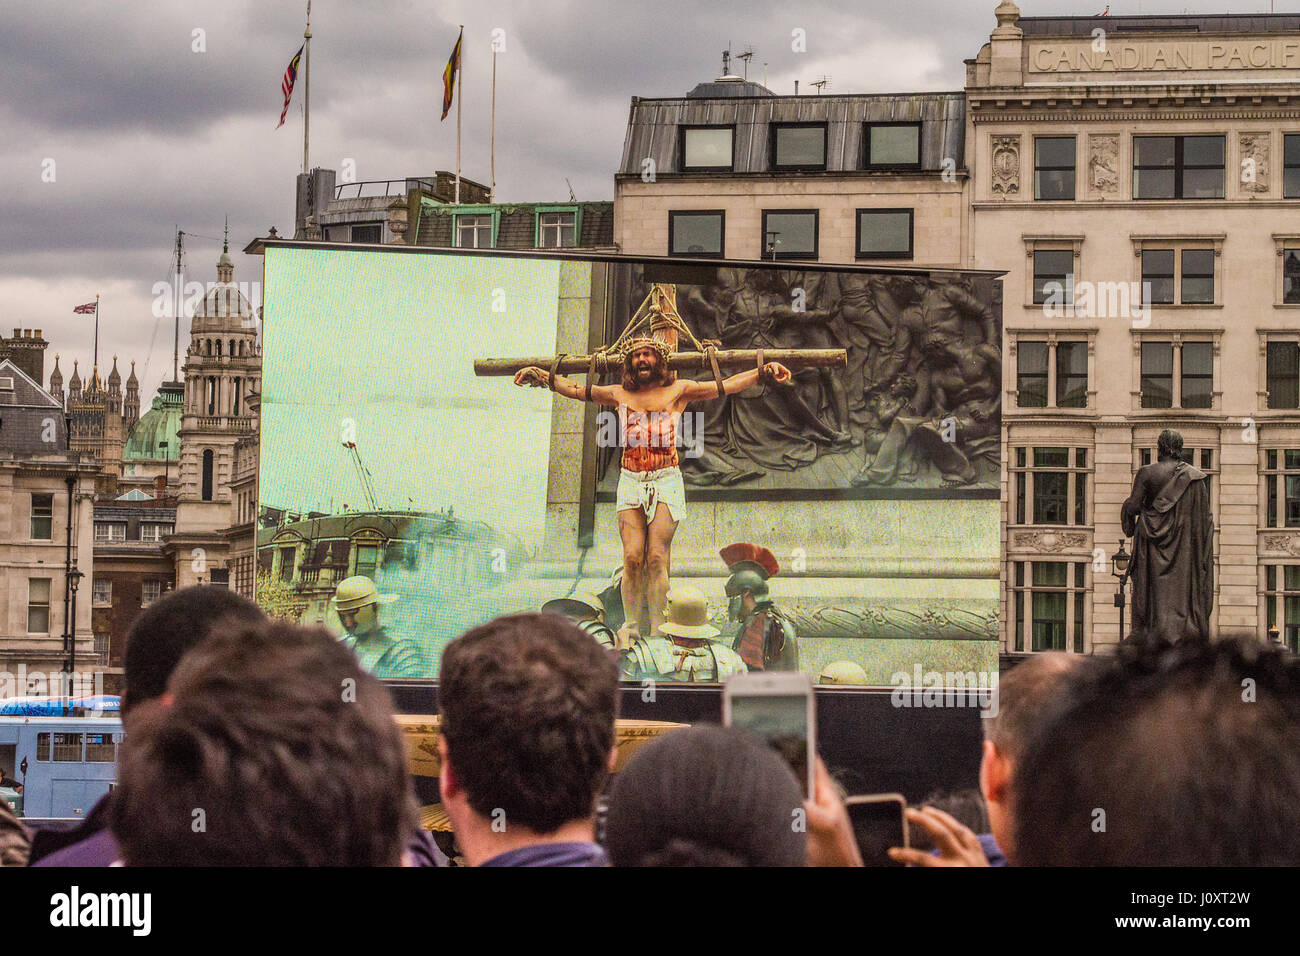 Theatralische Aufführung der Passion Christi in Trafalgar Square in London, Ostern Wochenende 2017 Stockfoto